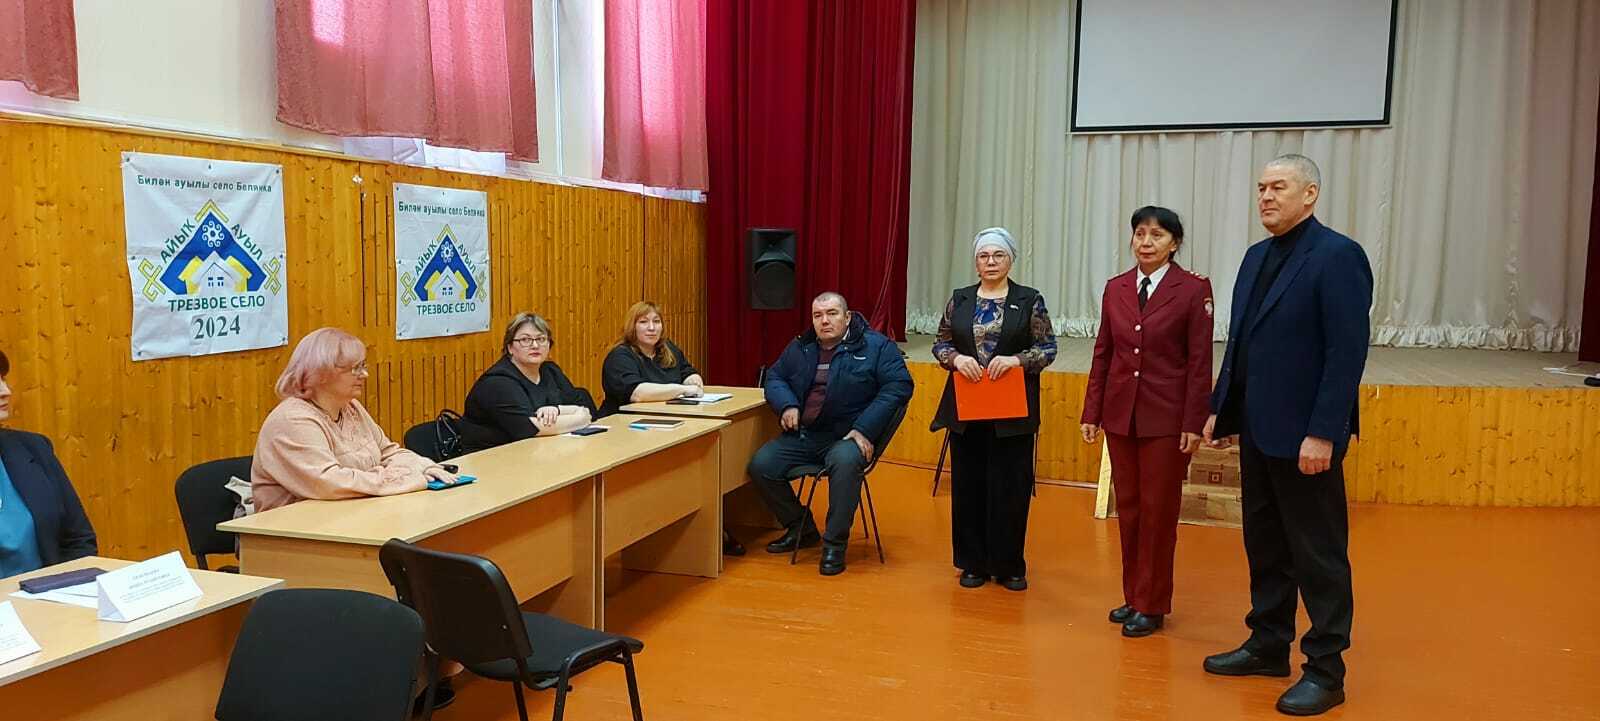 В Белянке в рамках конкурса «Трезвое село» состоялся выездной Единый день семейных консультаций.